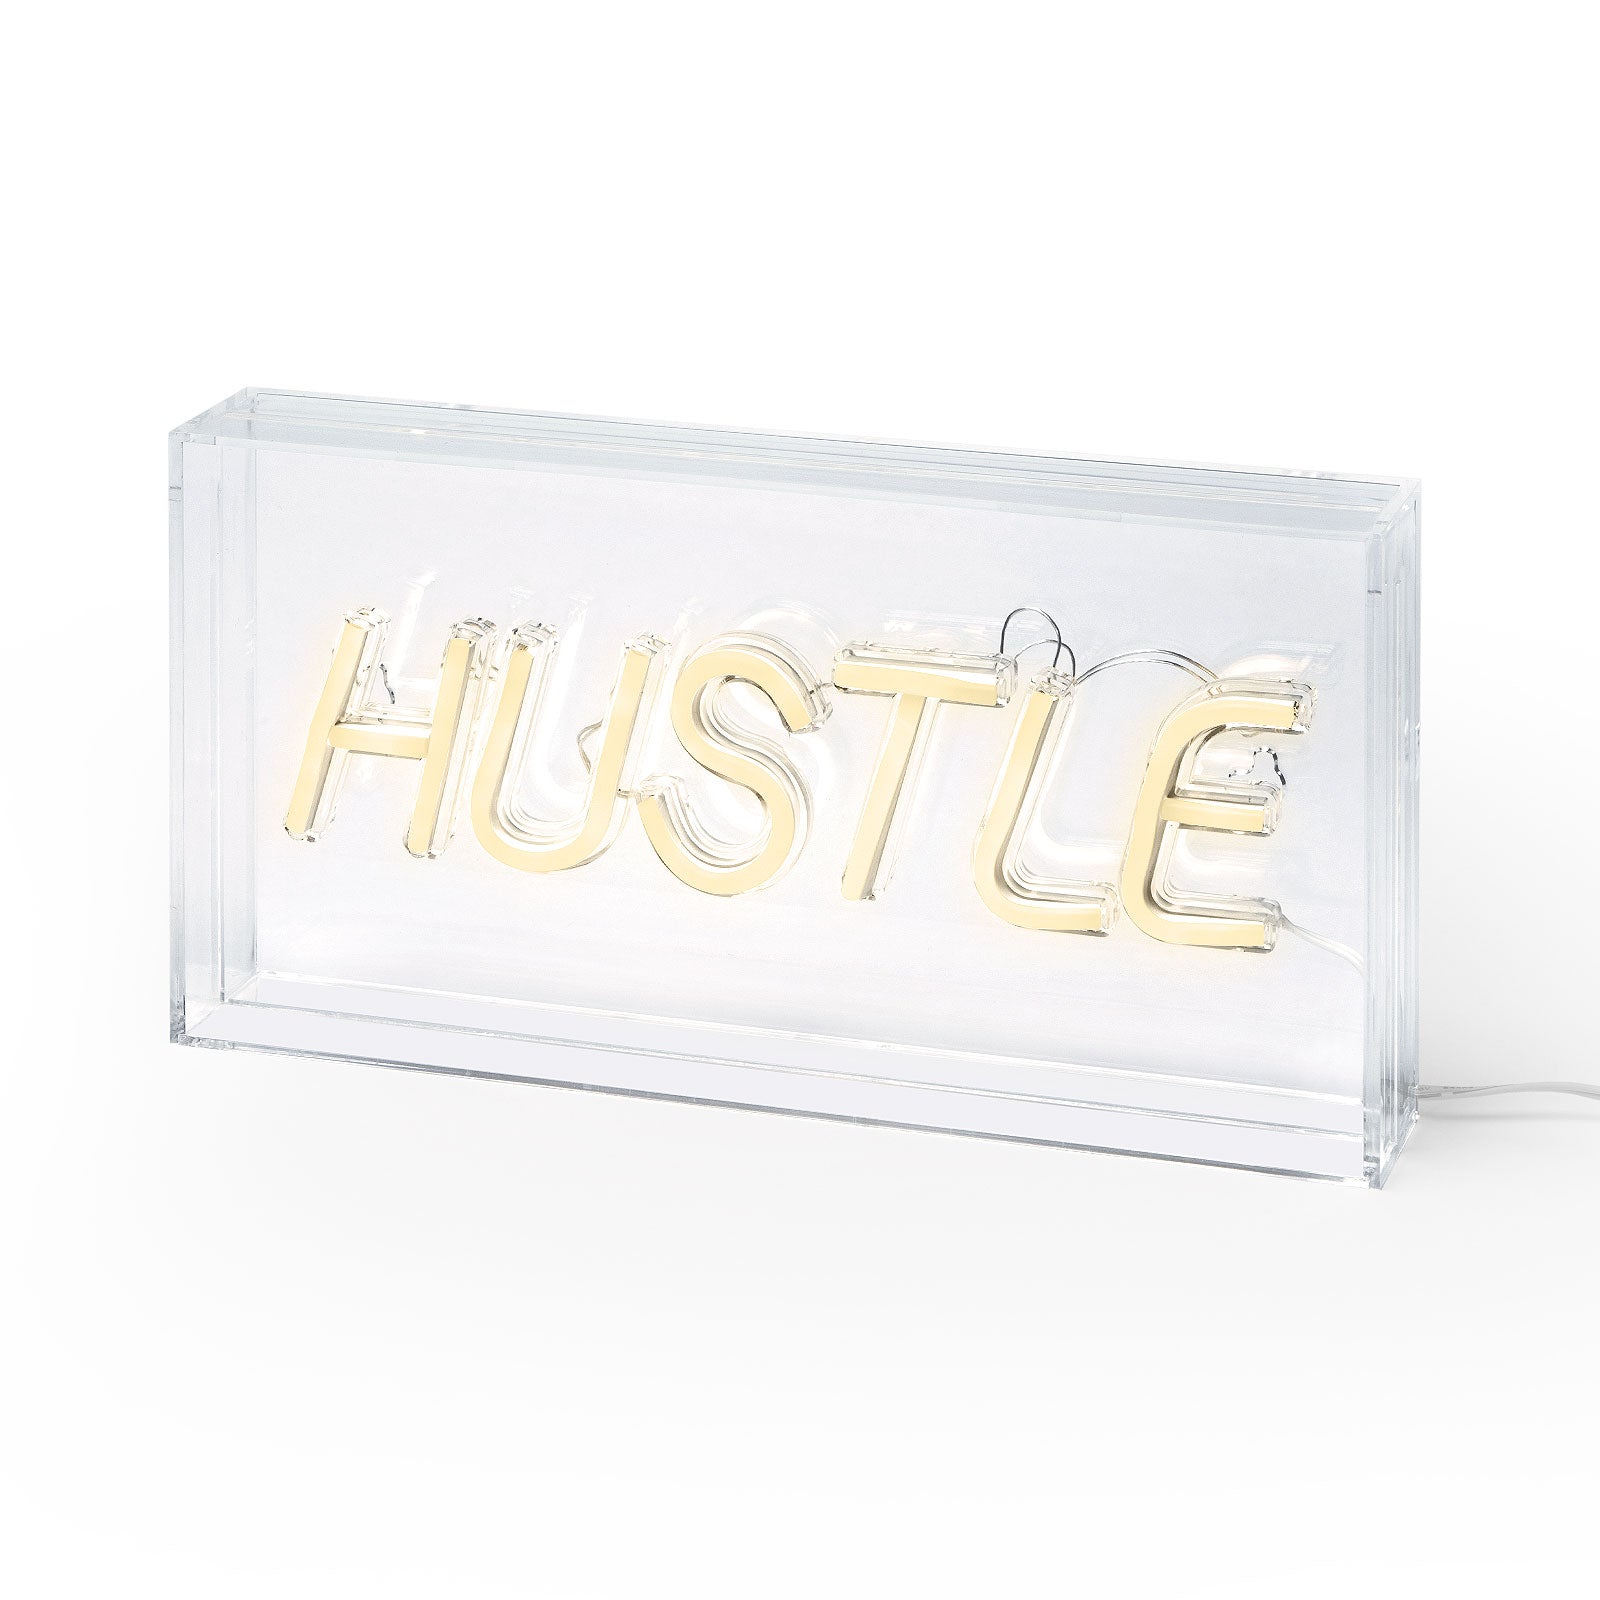 Hustle Neon Acrylic Box